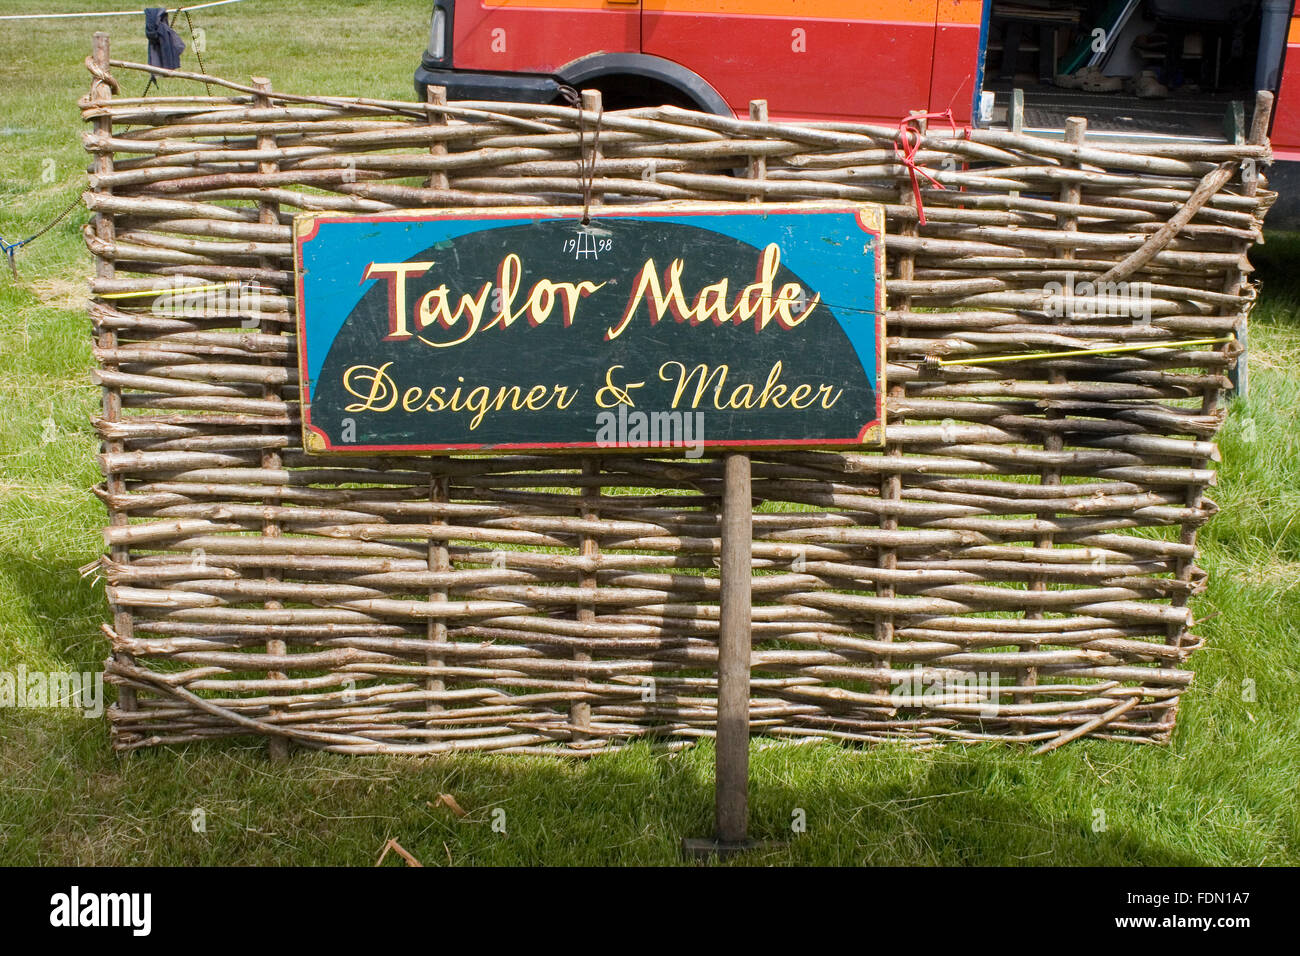 Taylor fait obstacle moutons woodsman artisan qualifié Banque D'Images